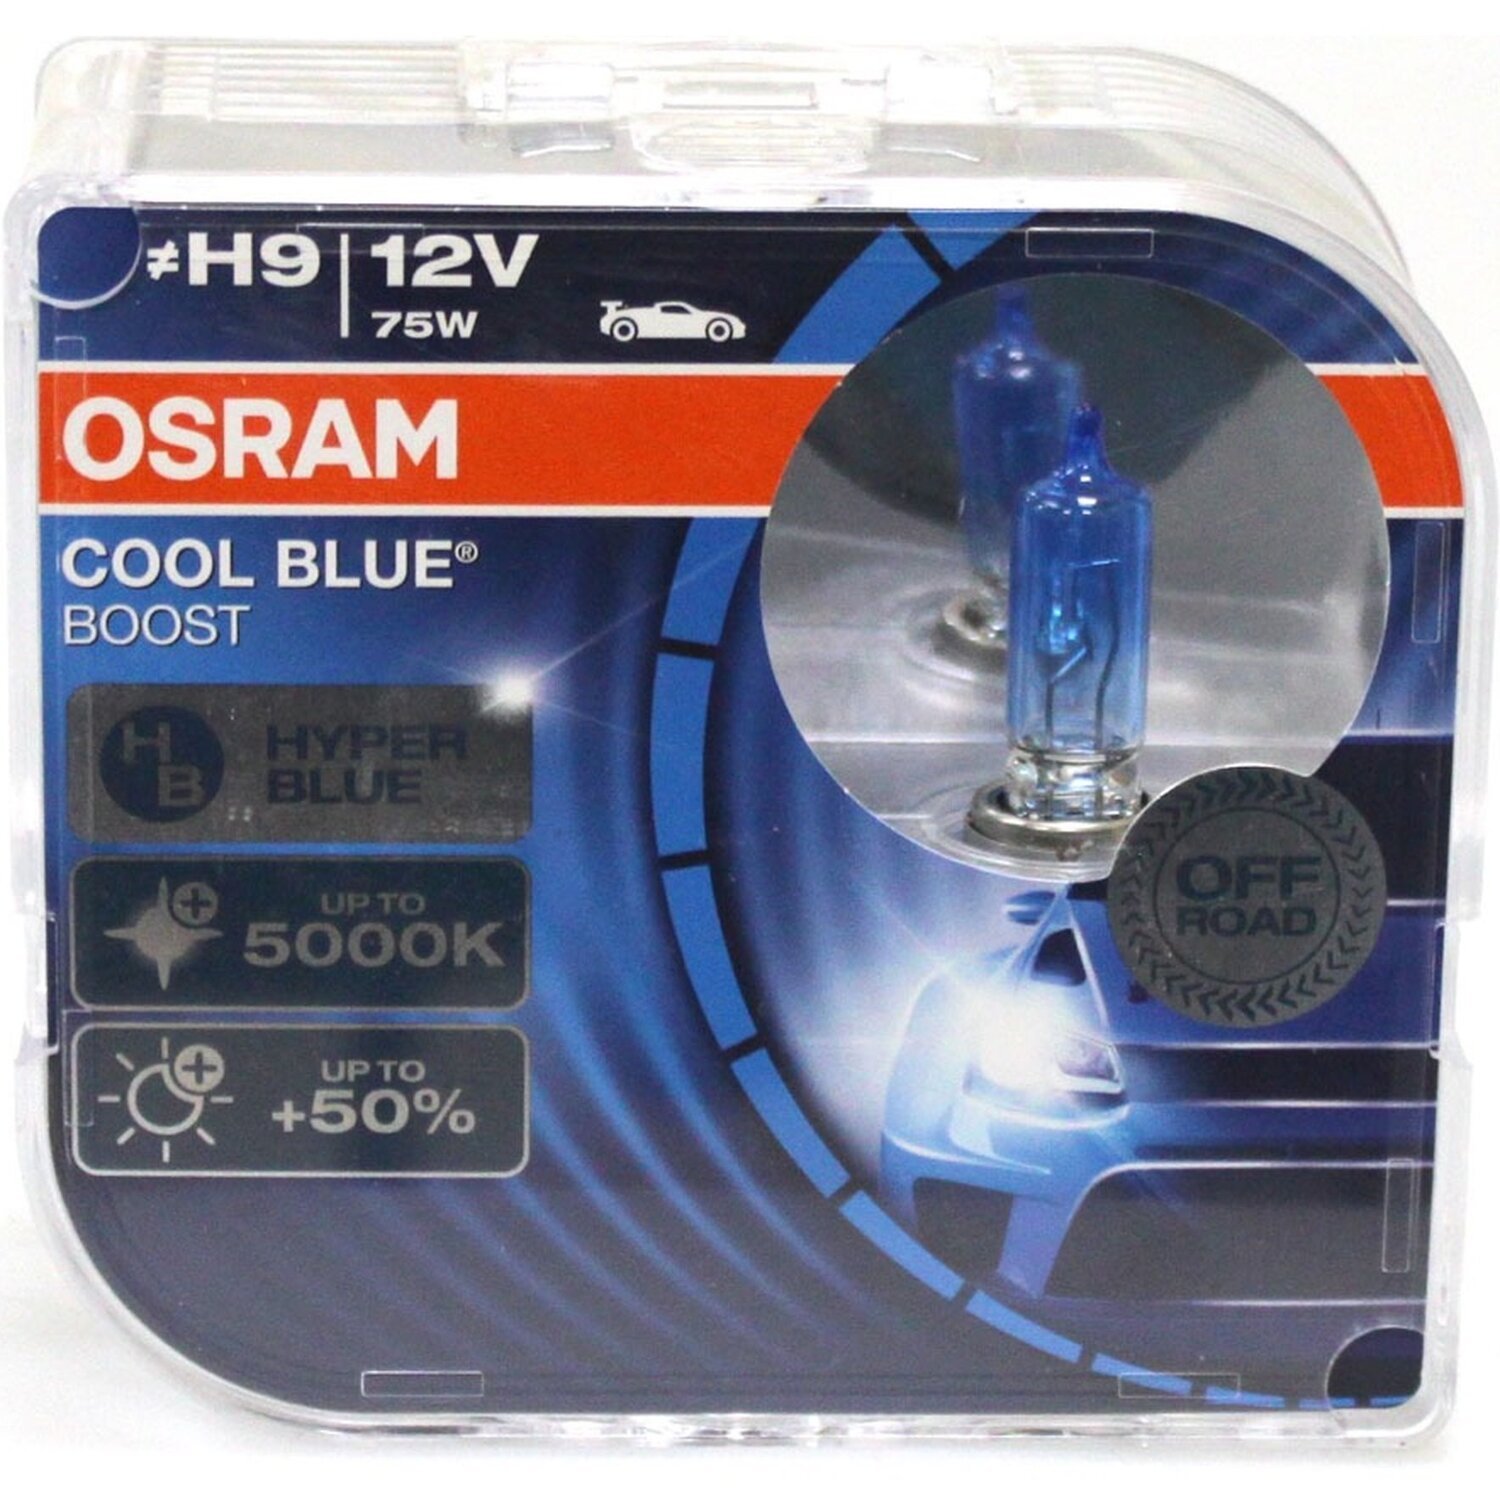 Лампа Osram галогеновая 12V H9 75W Pgj19-5 Cool Blue Boost +50%, Duobox (2шт) (OS_62213_CBB-HCB) фото 